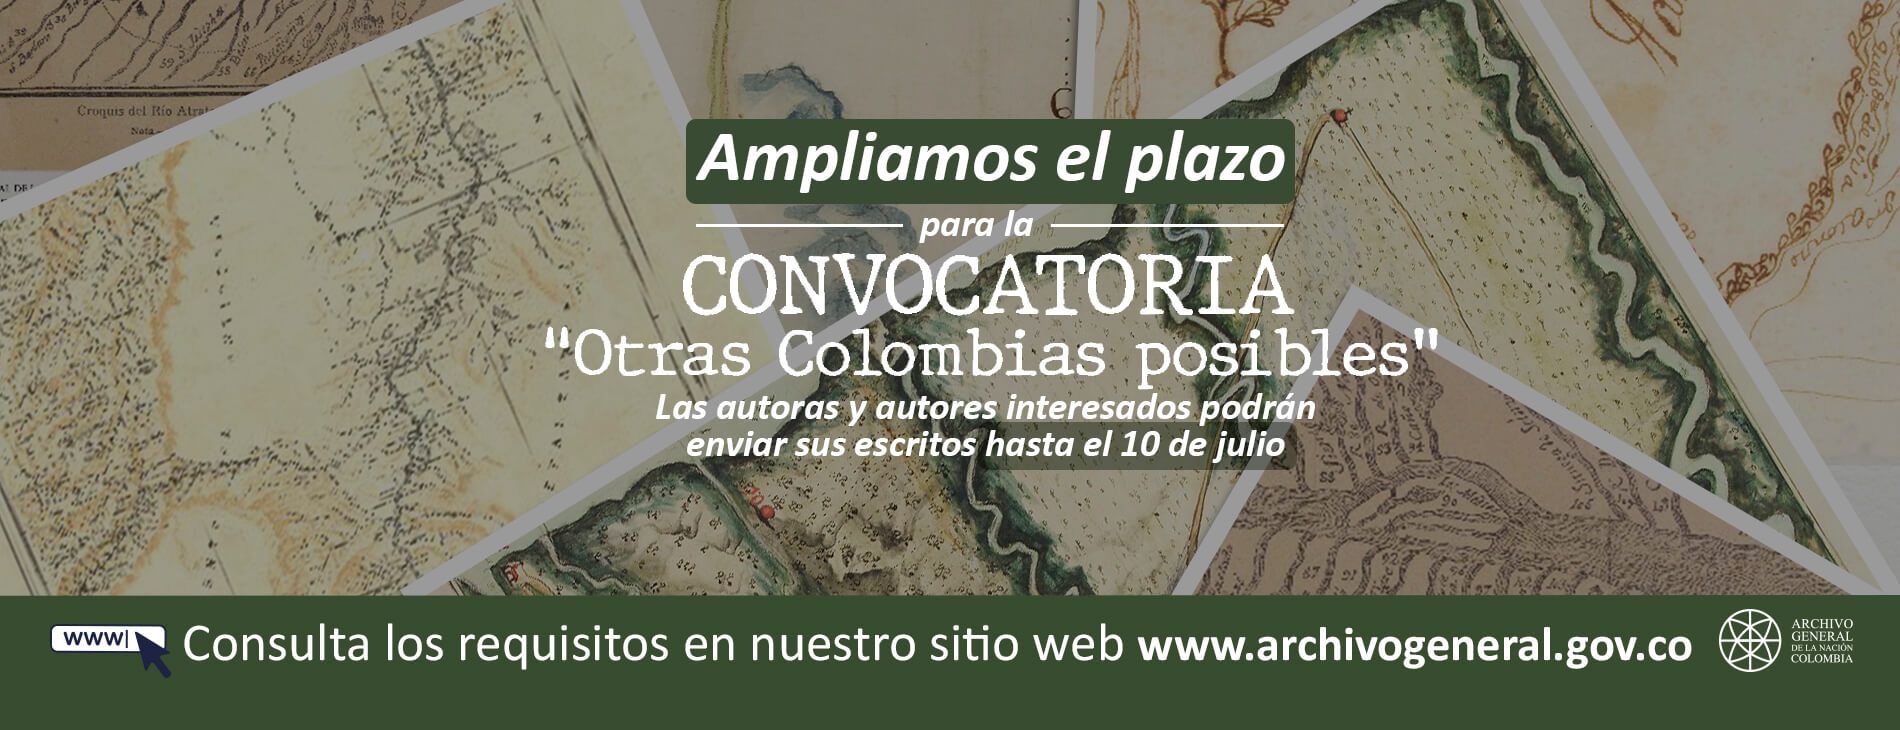 CONVOCATORIA PÚBLICA PARA LA SELECCIÓN DE INVESTIGACIONES QUE HARÁN PARTE DE LA COLECCIÓN “OTRAS COLOMBIAS POSIBLES